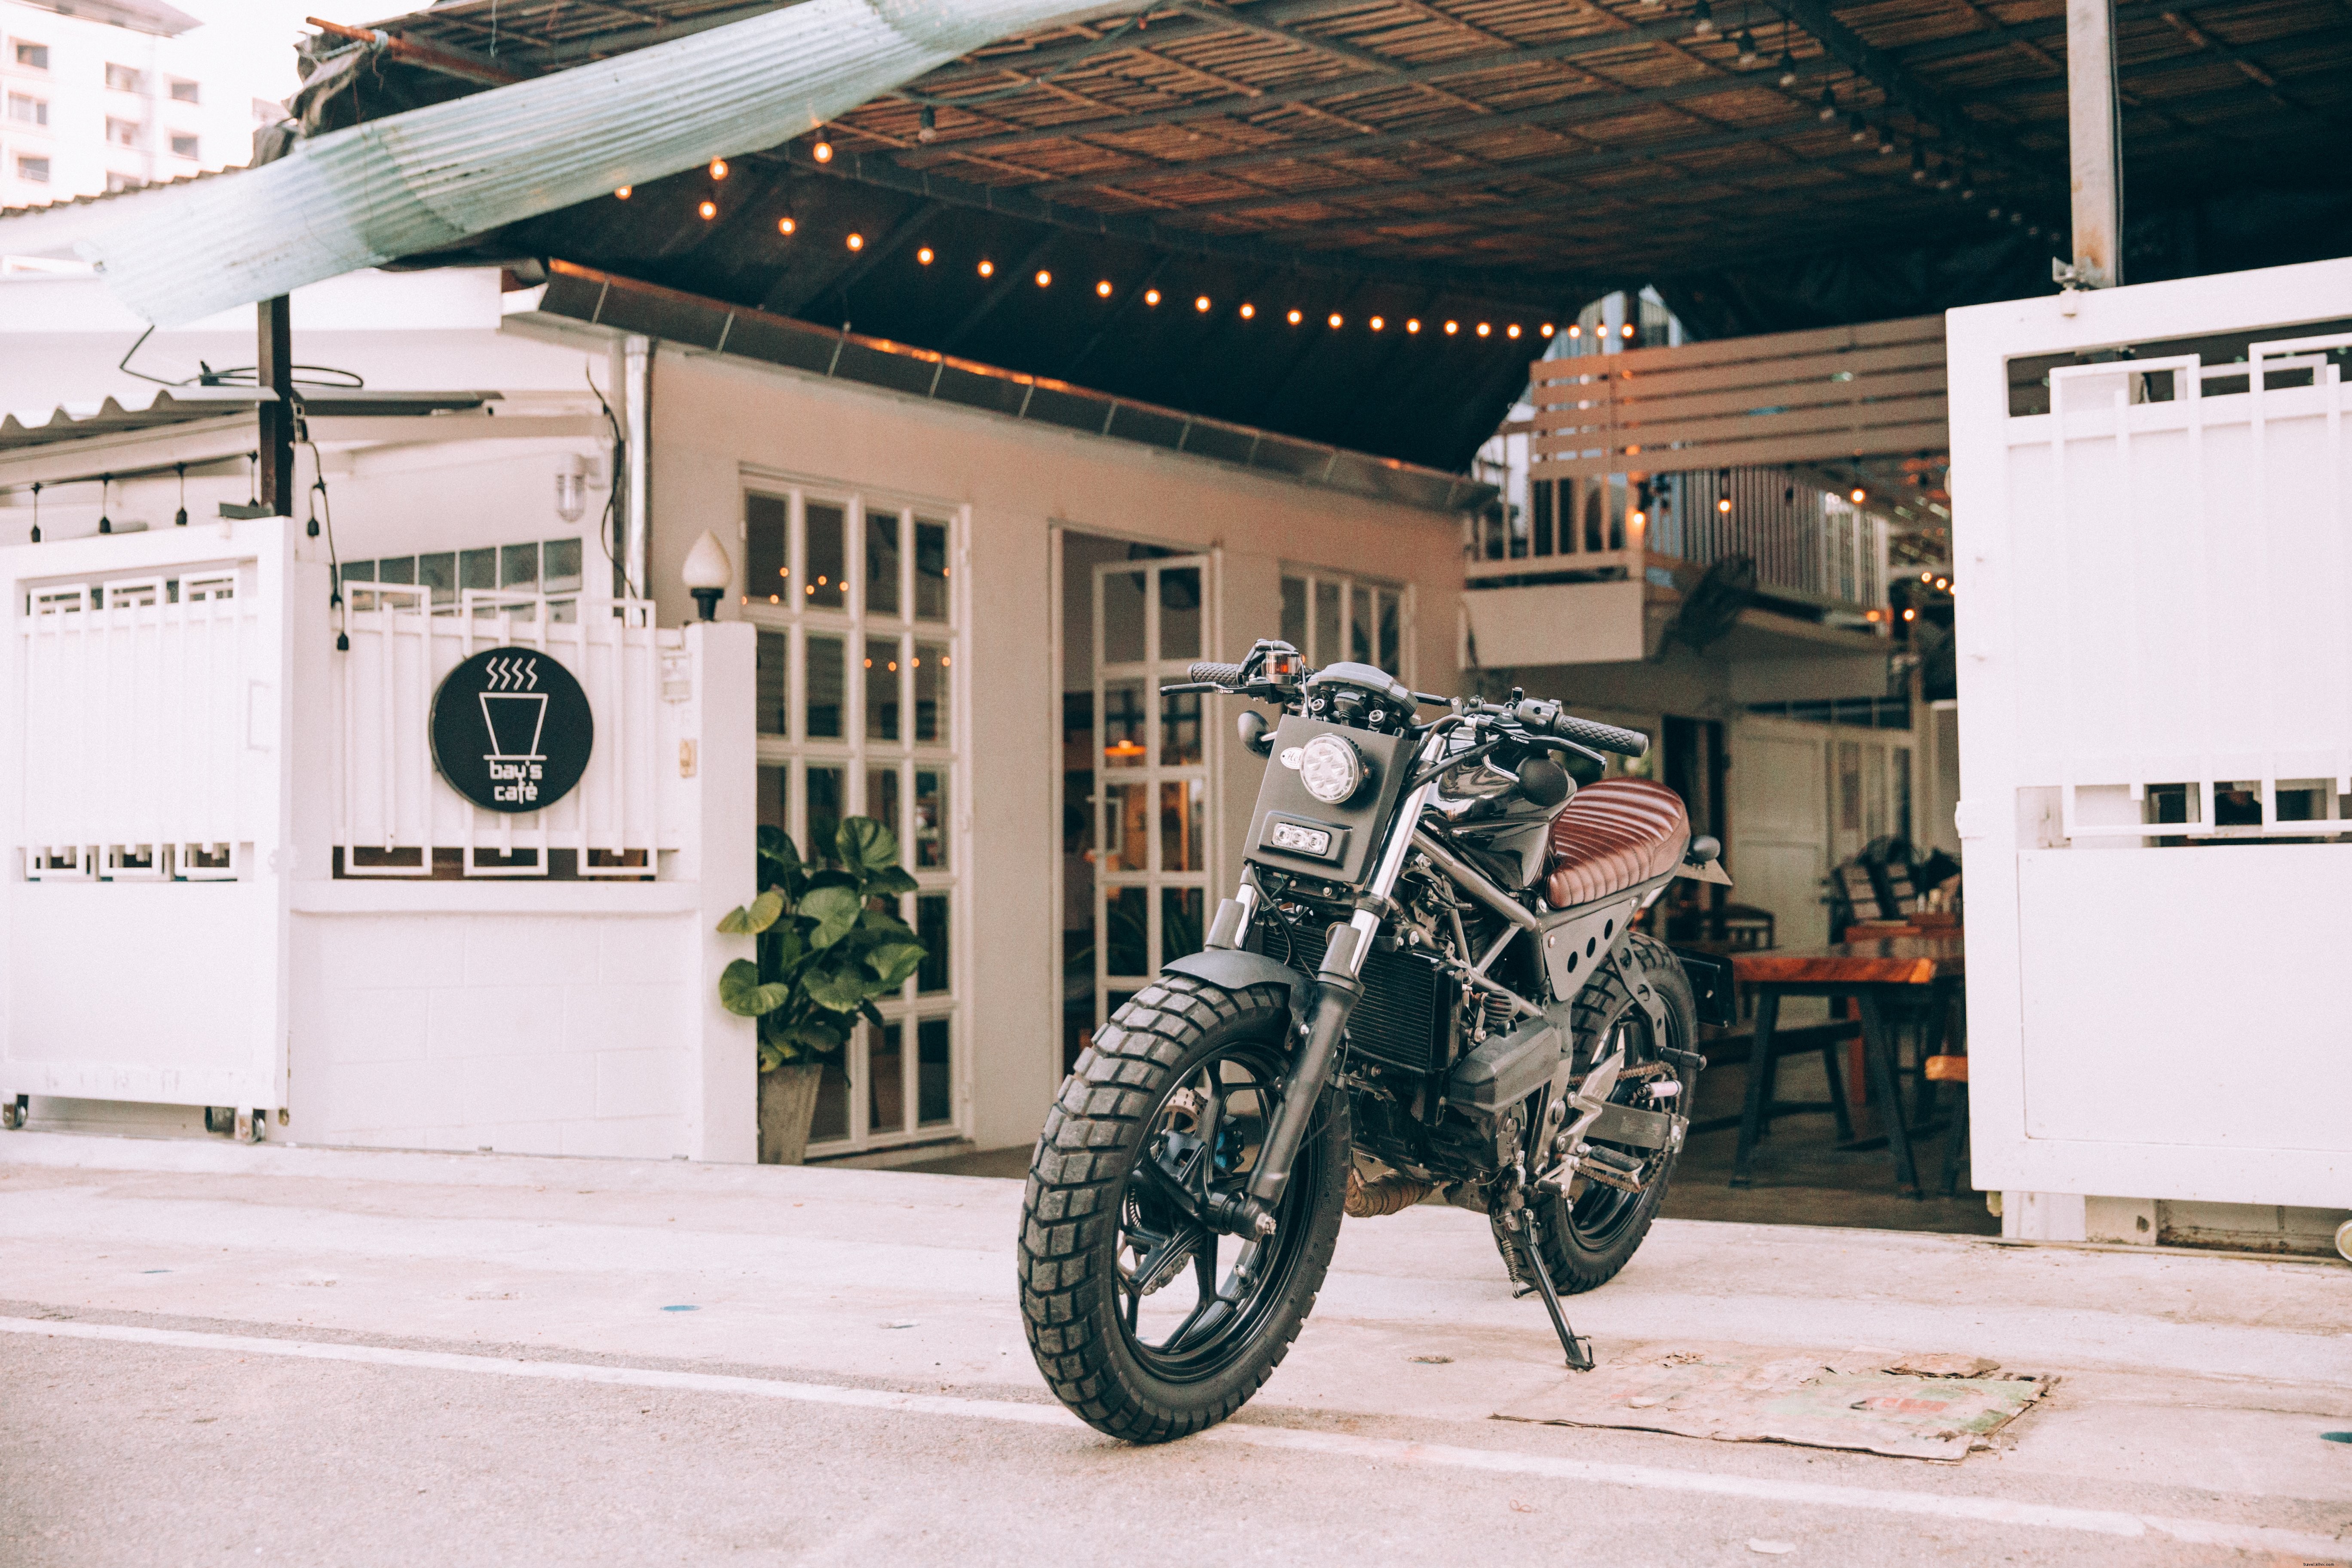 カフェの外のバイク写真